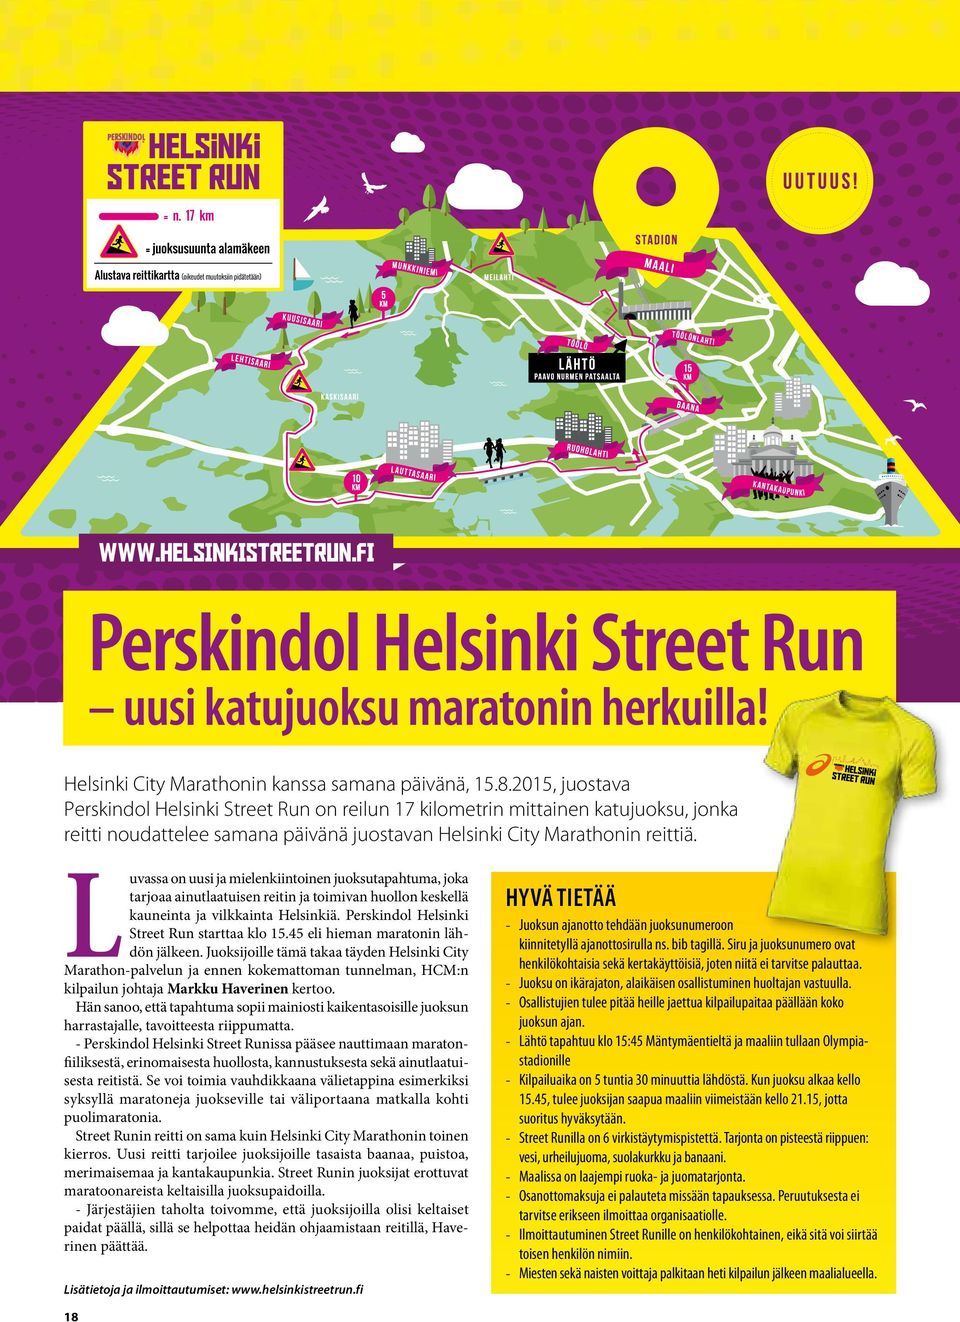 Luvassa on uusi ja mielenkiintoinen juoksutapahtuma, joka tarjoaa ainutlaatuisen reitin ja toimivan huollon keskellä kauneinta ja vilkkainta Helsinkiä. Perskindol Helsinki Street Run starttaa klo 15.